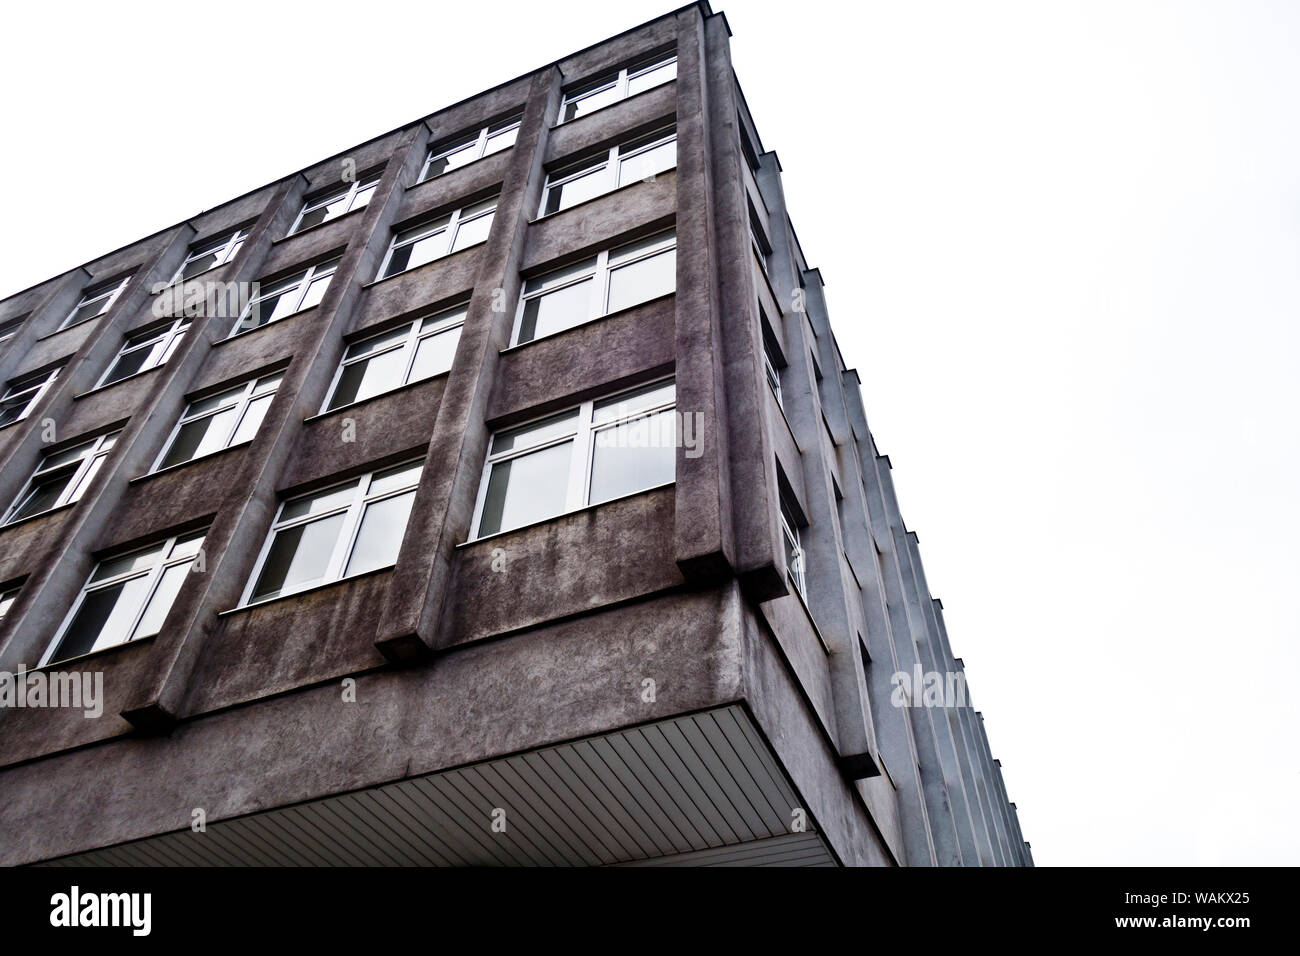 Edificio in stile costruttivista dell'epoca comunista della Cecoslovacchia Foto Stock